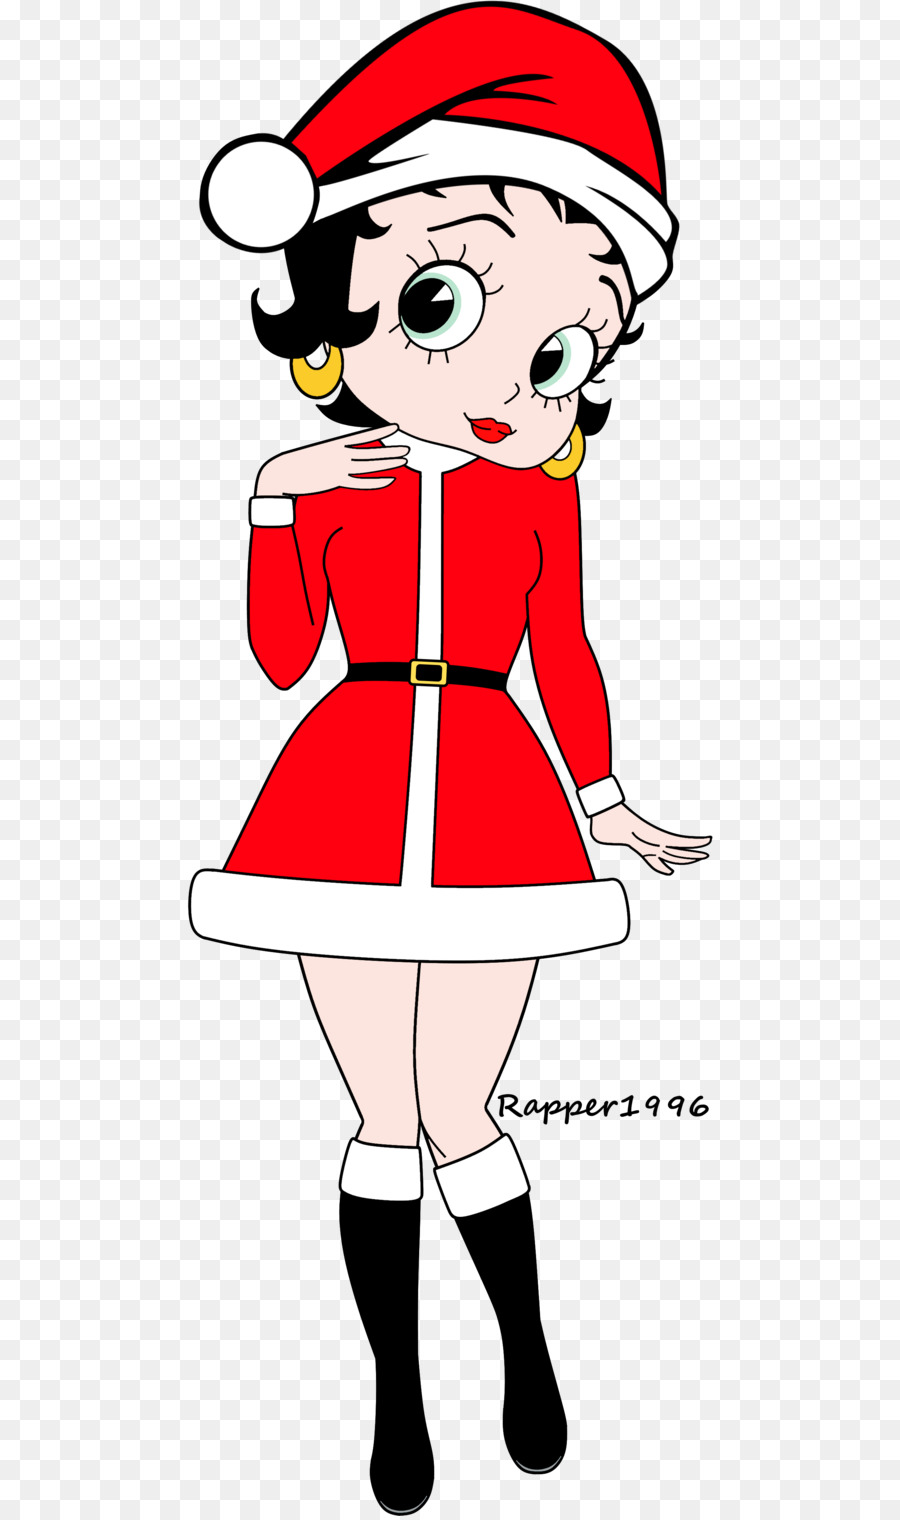 Betty Boop Koko der Clown Cartoon Comics Zeichnen - Weihnachtsmann